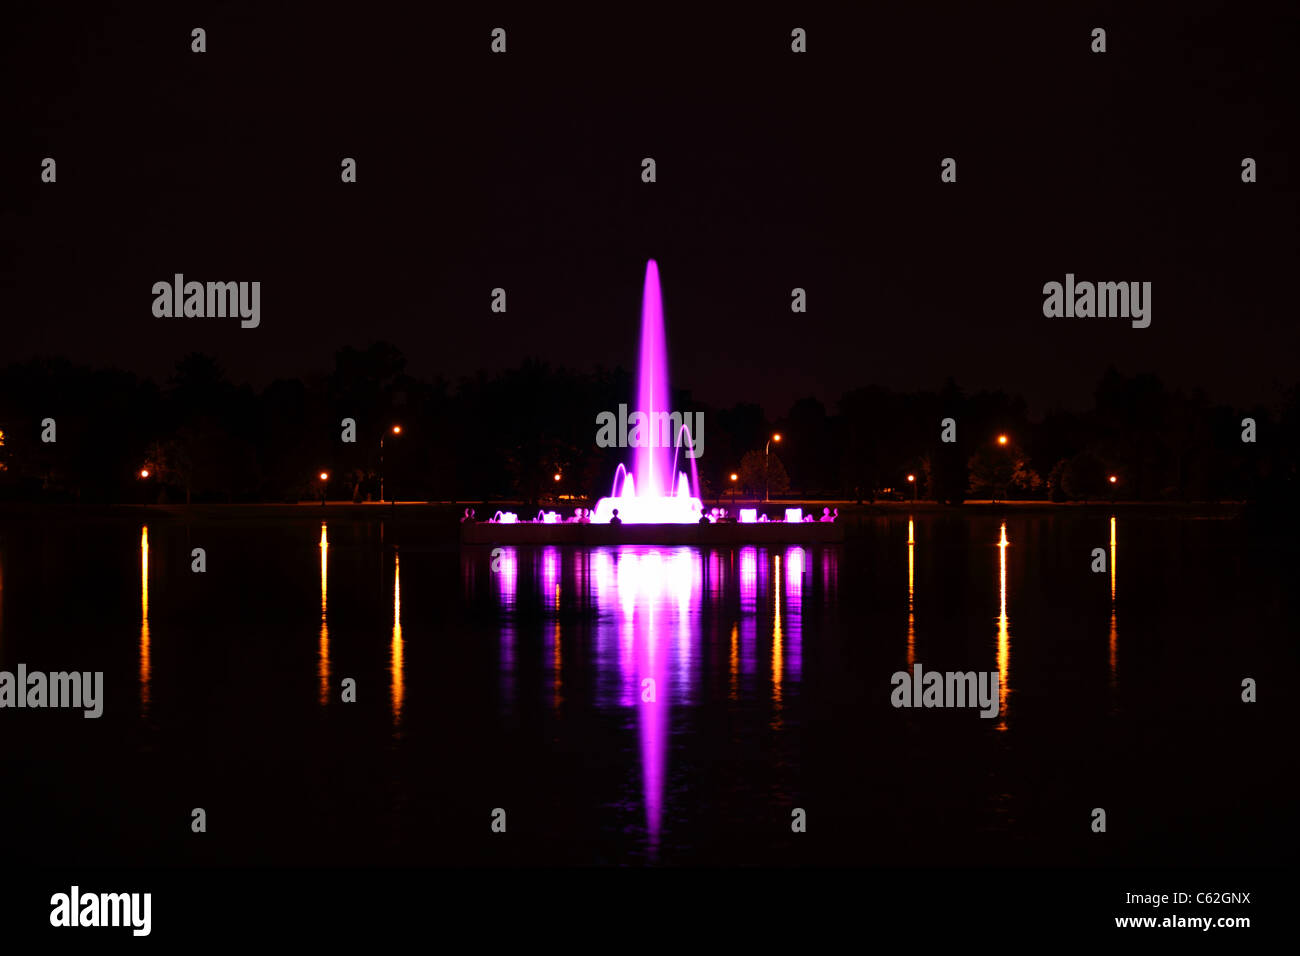 Una lunga esposizione immagine di Denver è prismatico storica fontana elettrica sul lago Ferril nel parco della città illuminata di notte. Foto Stock